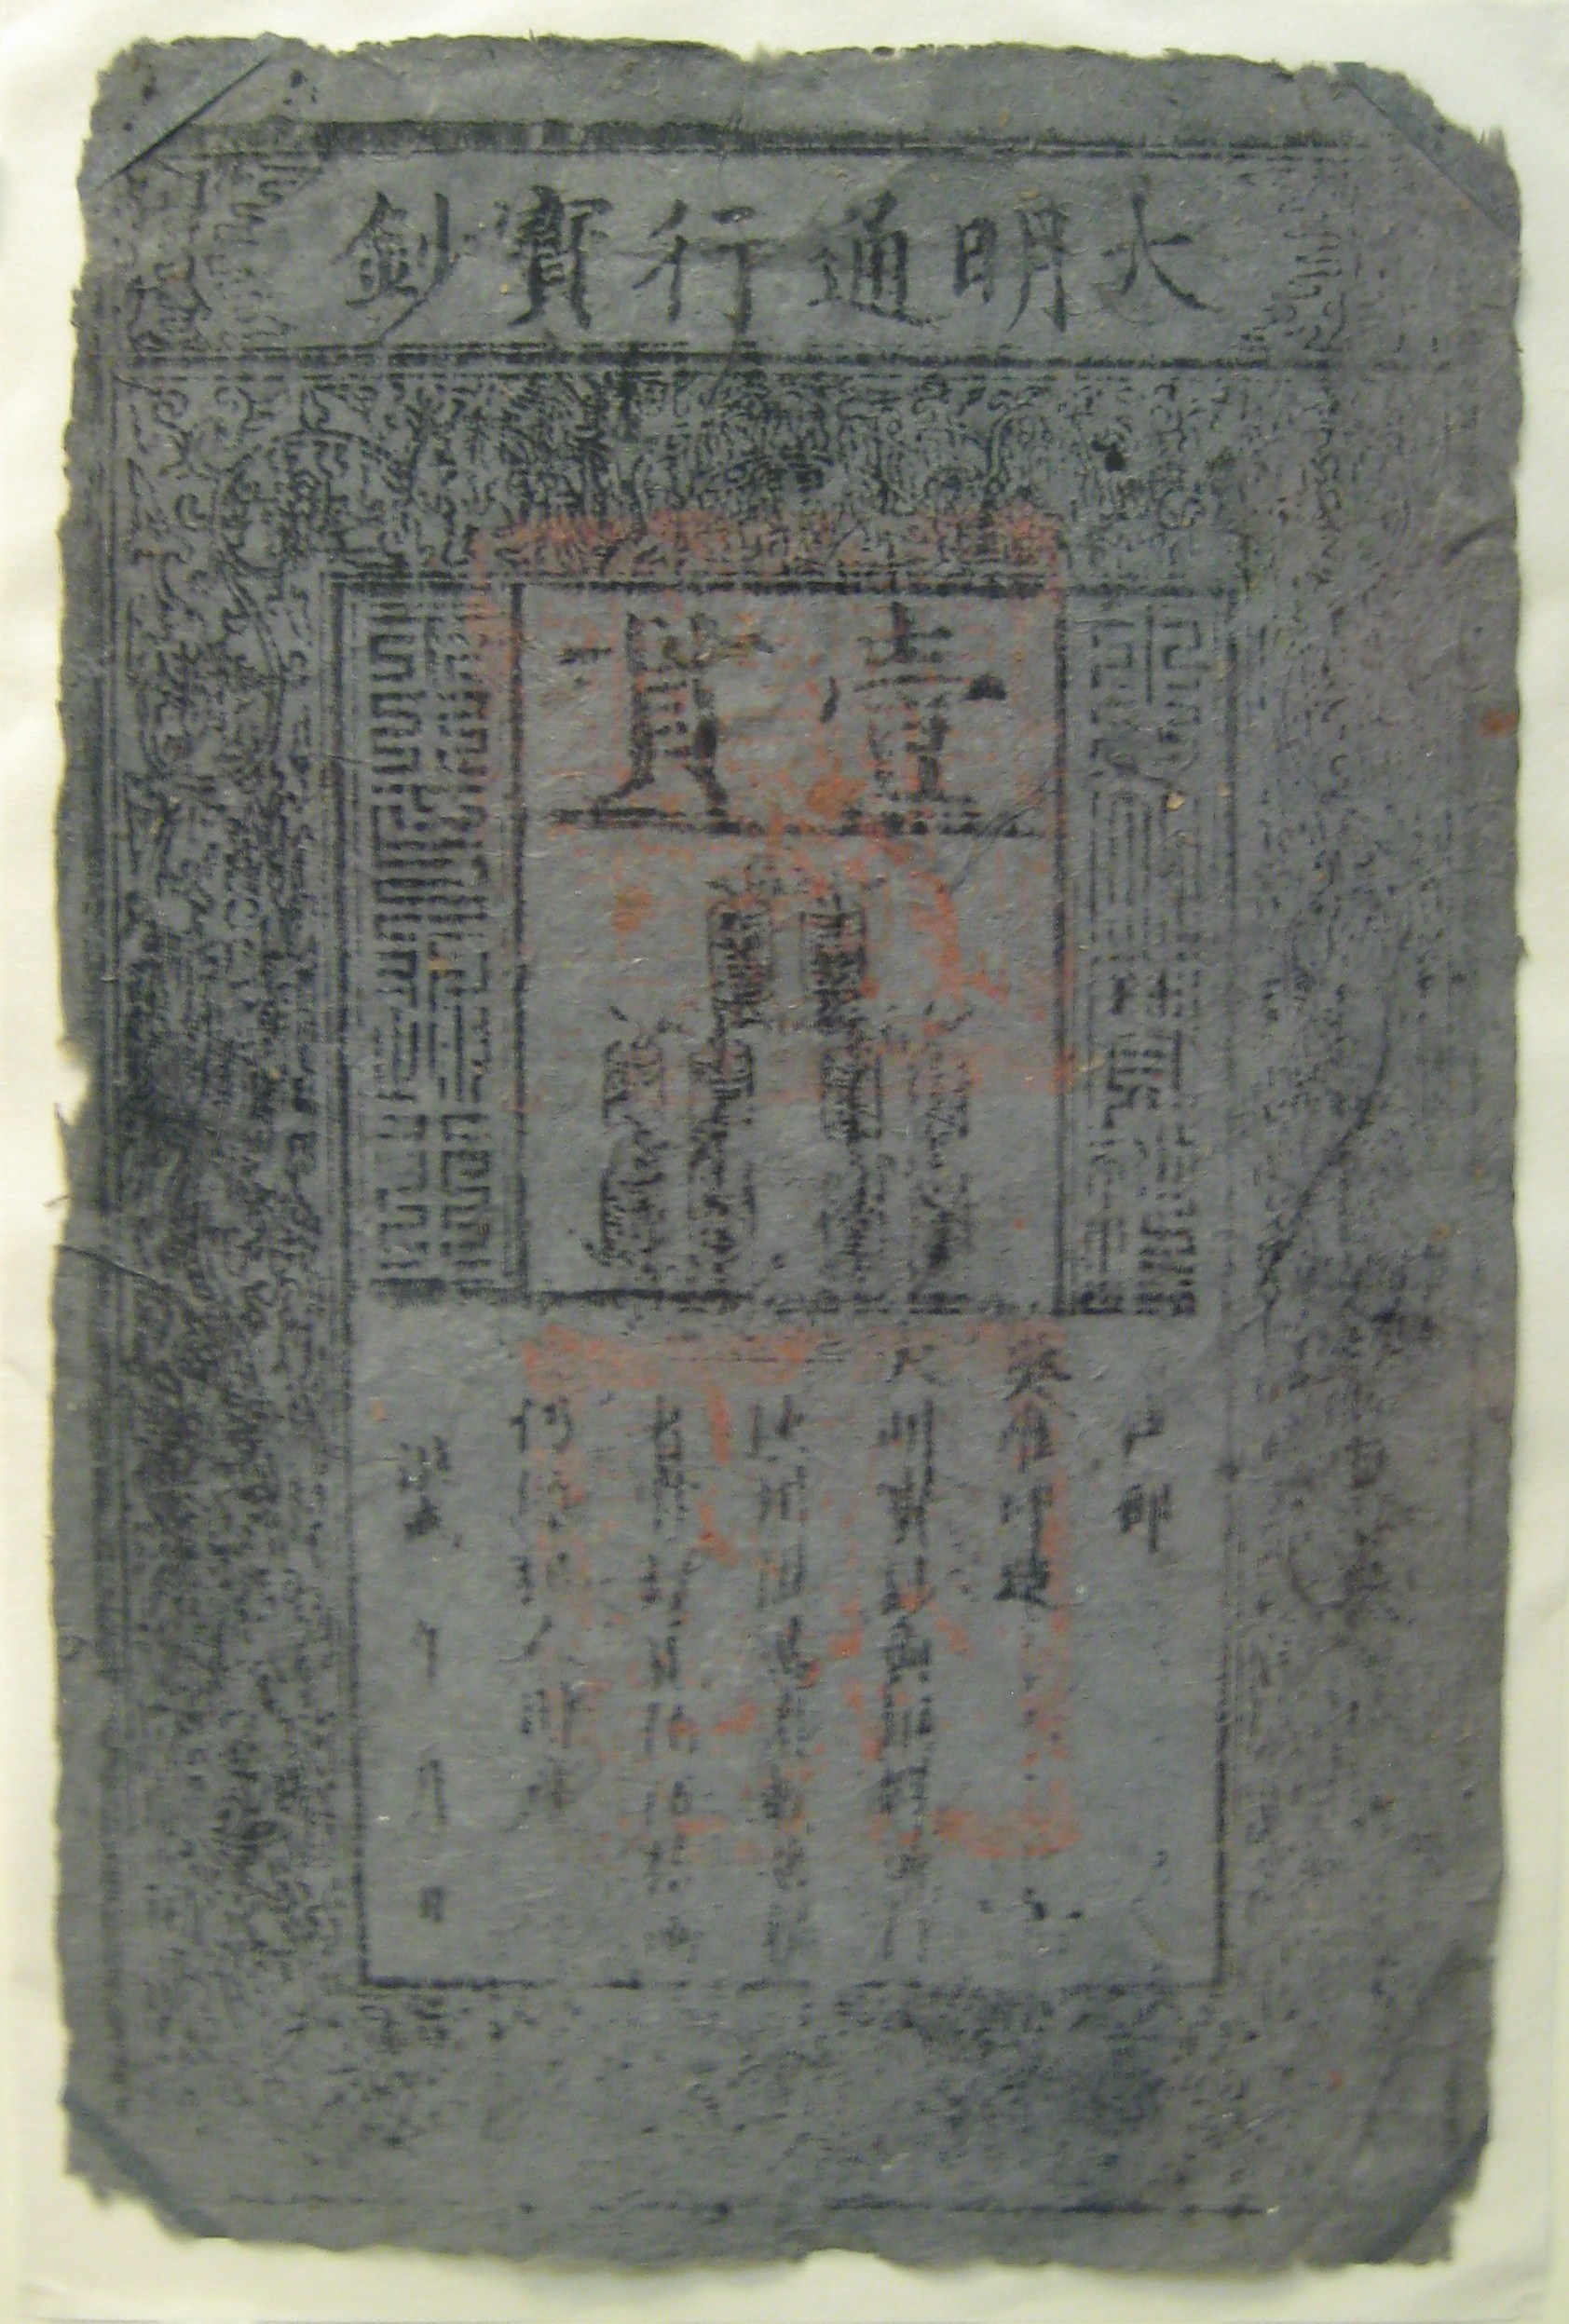 Vào thời nhà Minh, các kỹ thuật chống làm giả tiền giấy đã tăng lên không ít. Ảnh chụp tờ một quan “Đại Minh Thông Hành Bảo Sao.” (Ảnh: Tài sản công)